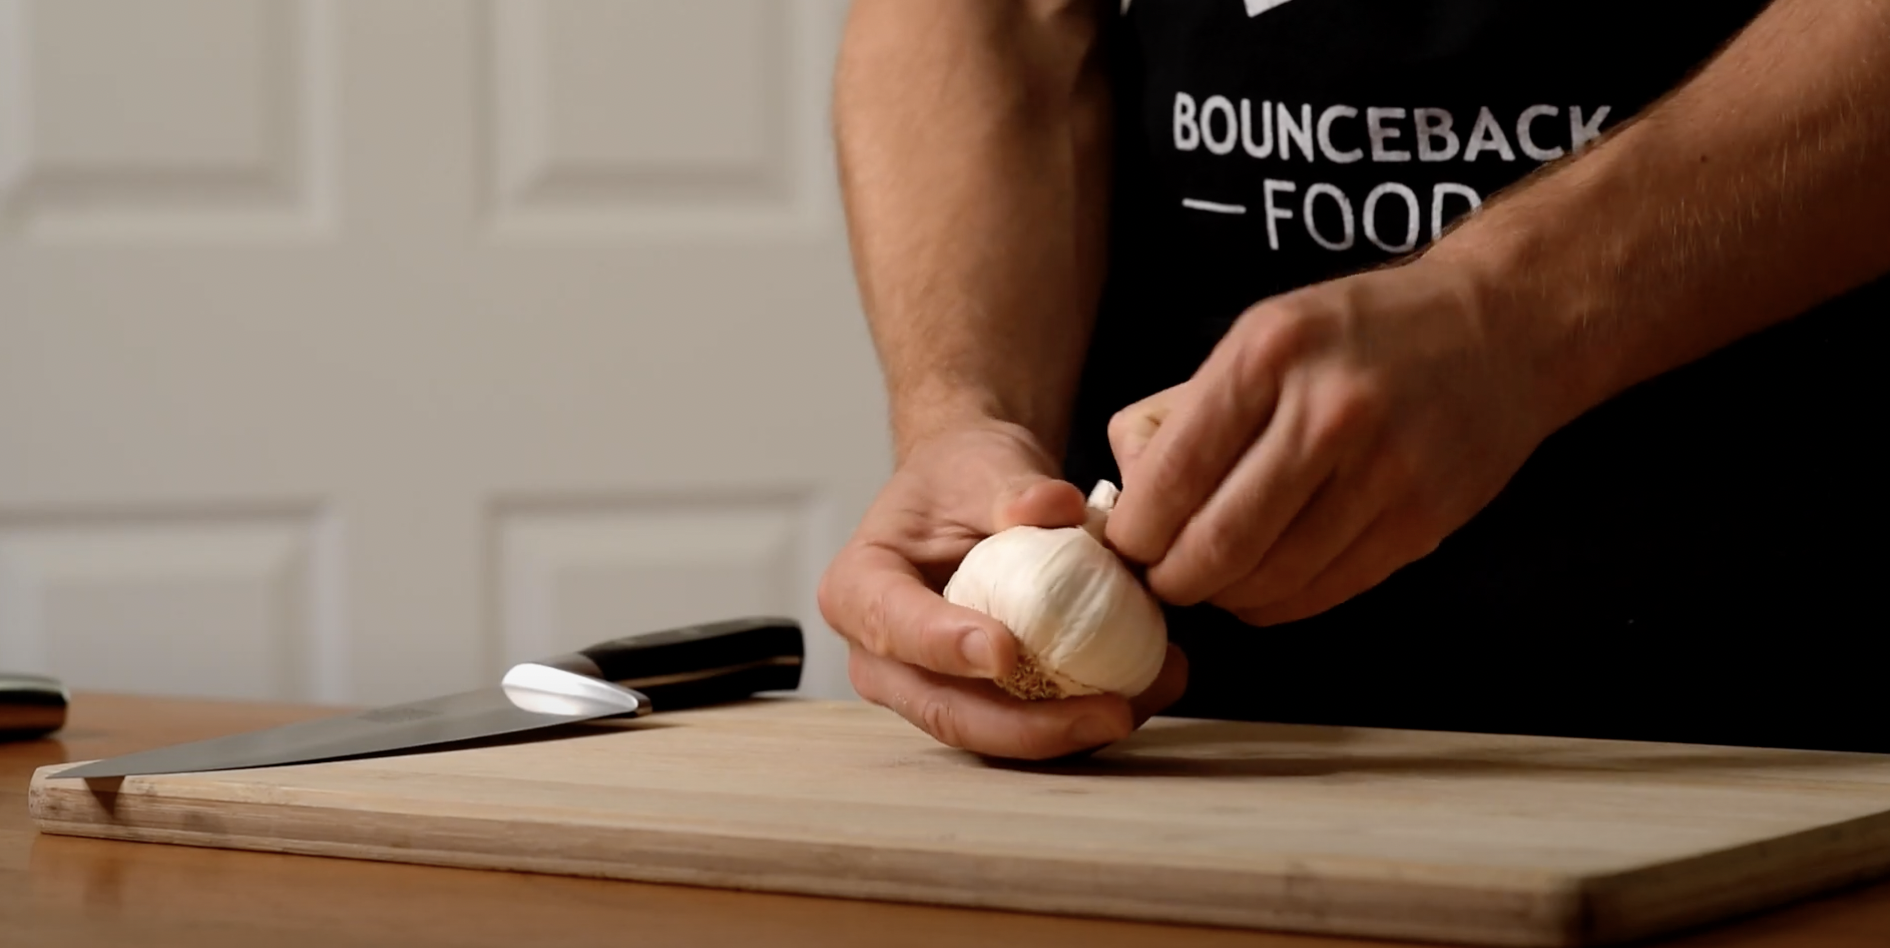 A Bounceback Food chef preparing garlic on a chopping board.